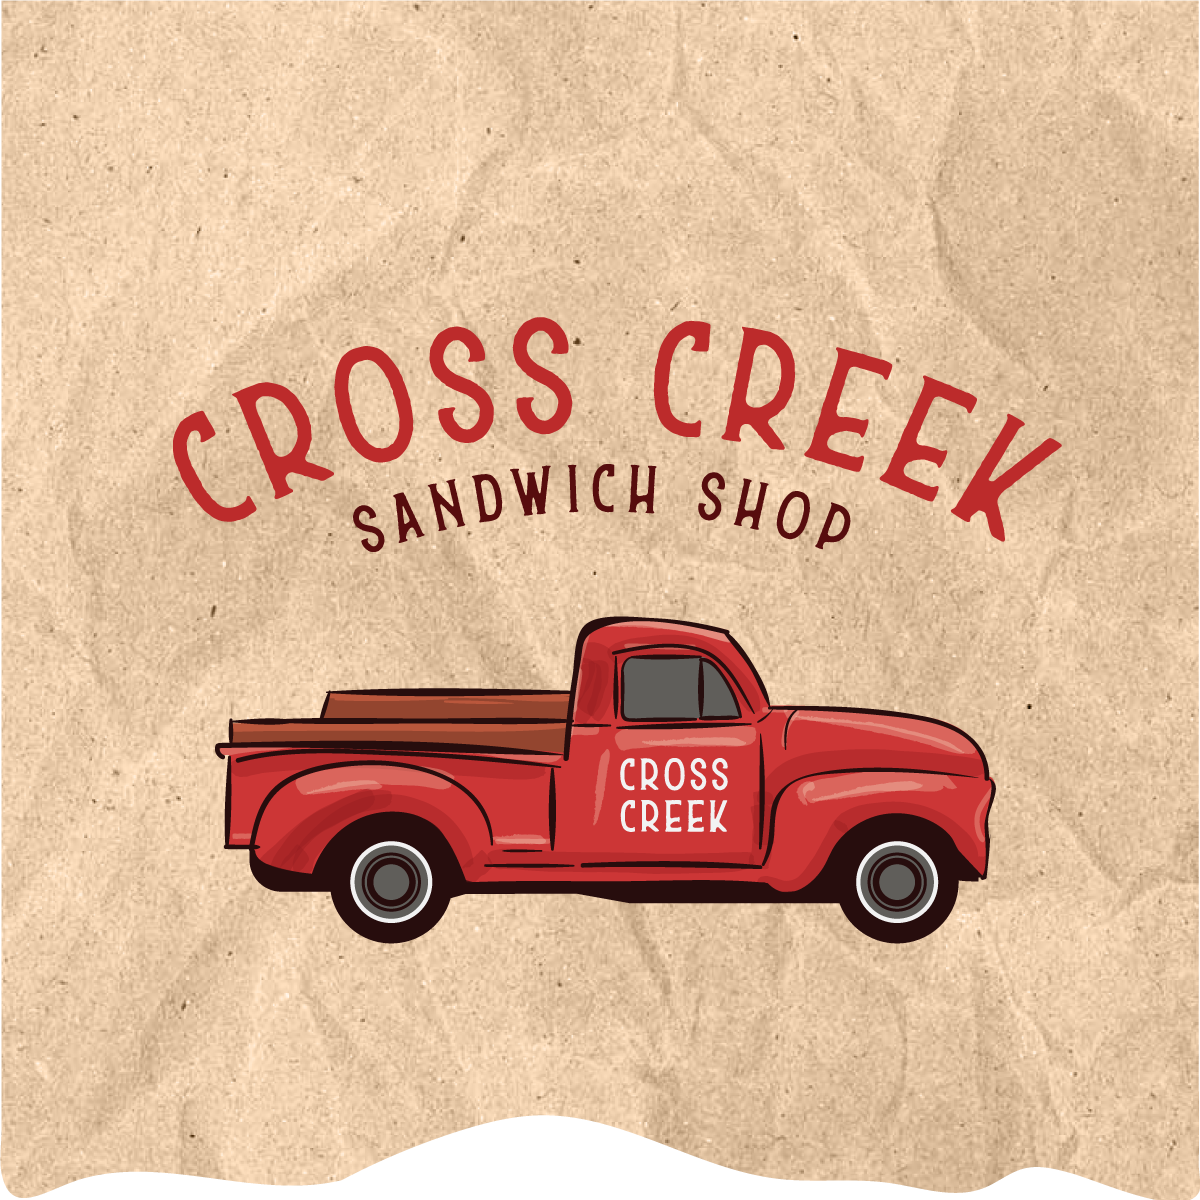 Cross Creek Sandwich Shop